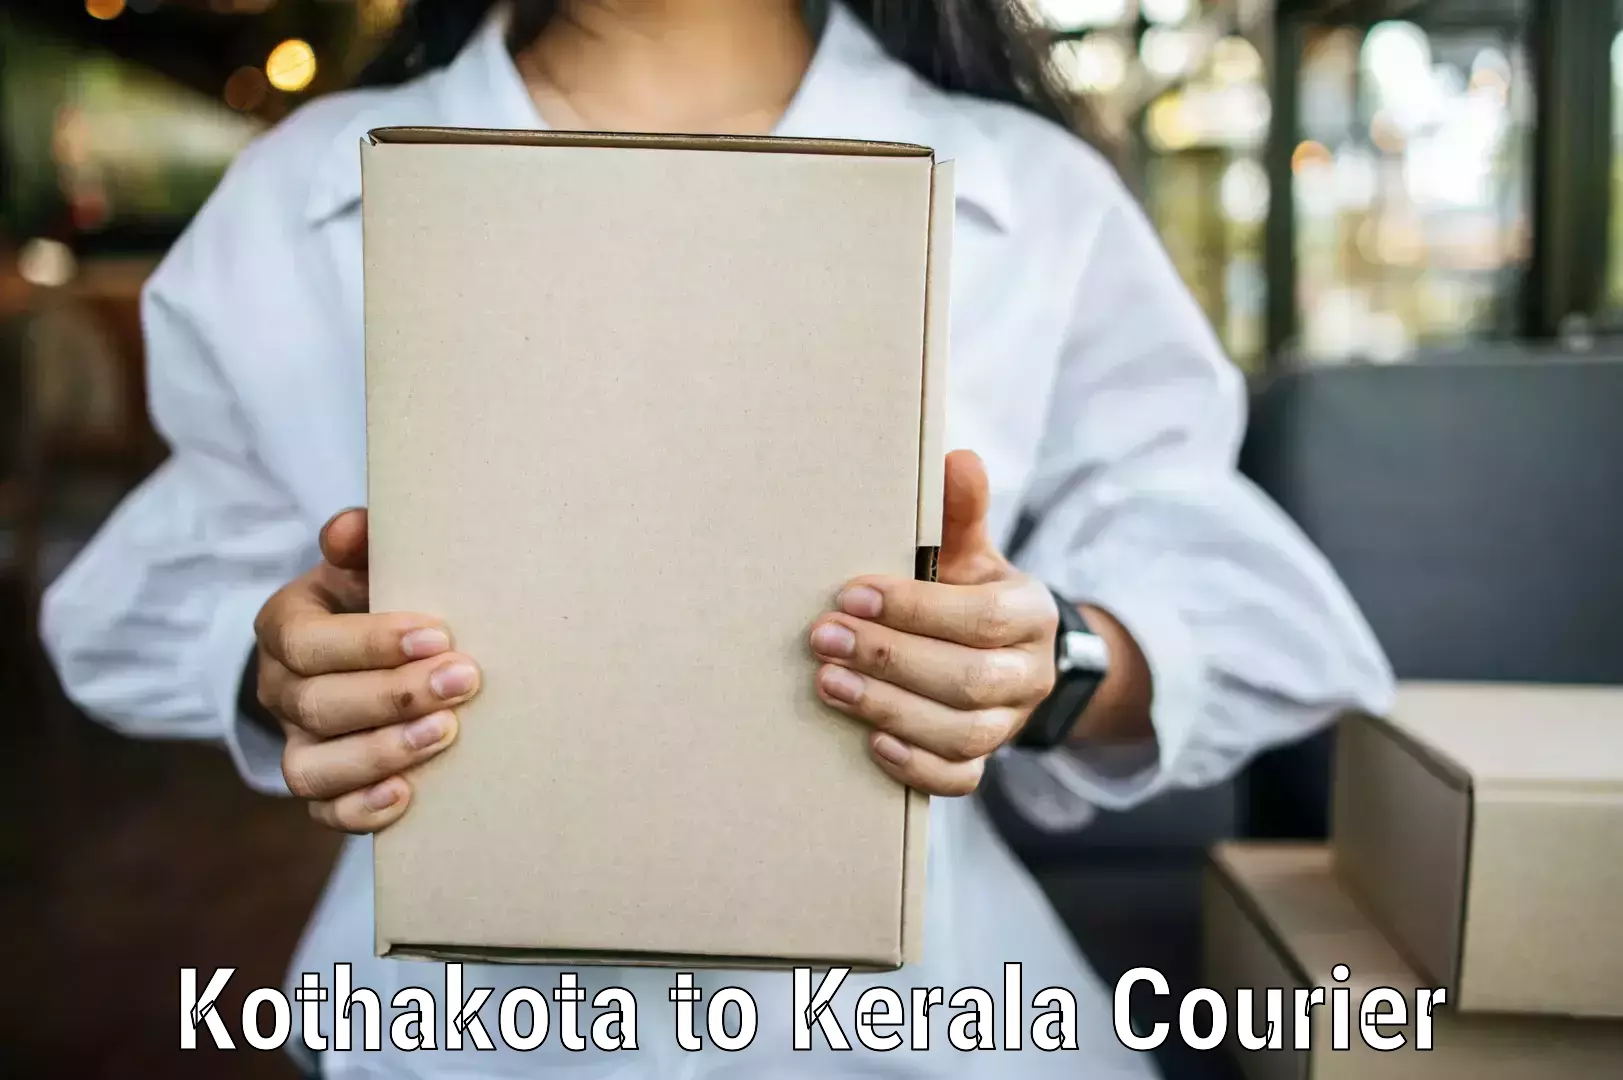 Quality courier services Kothakota to Pallikkara